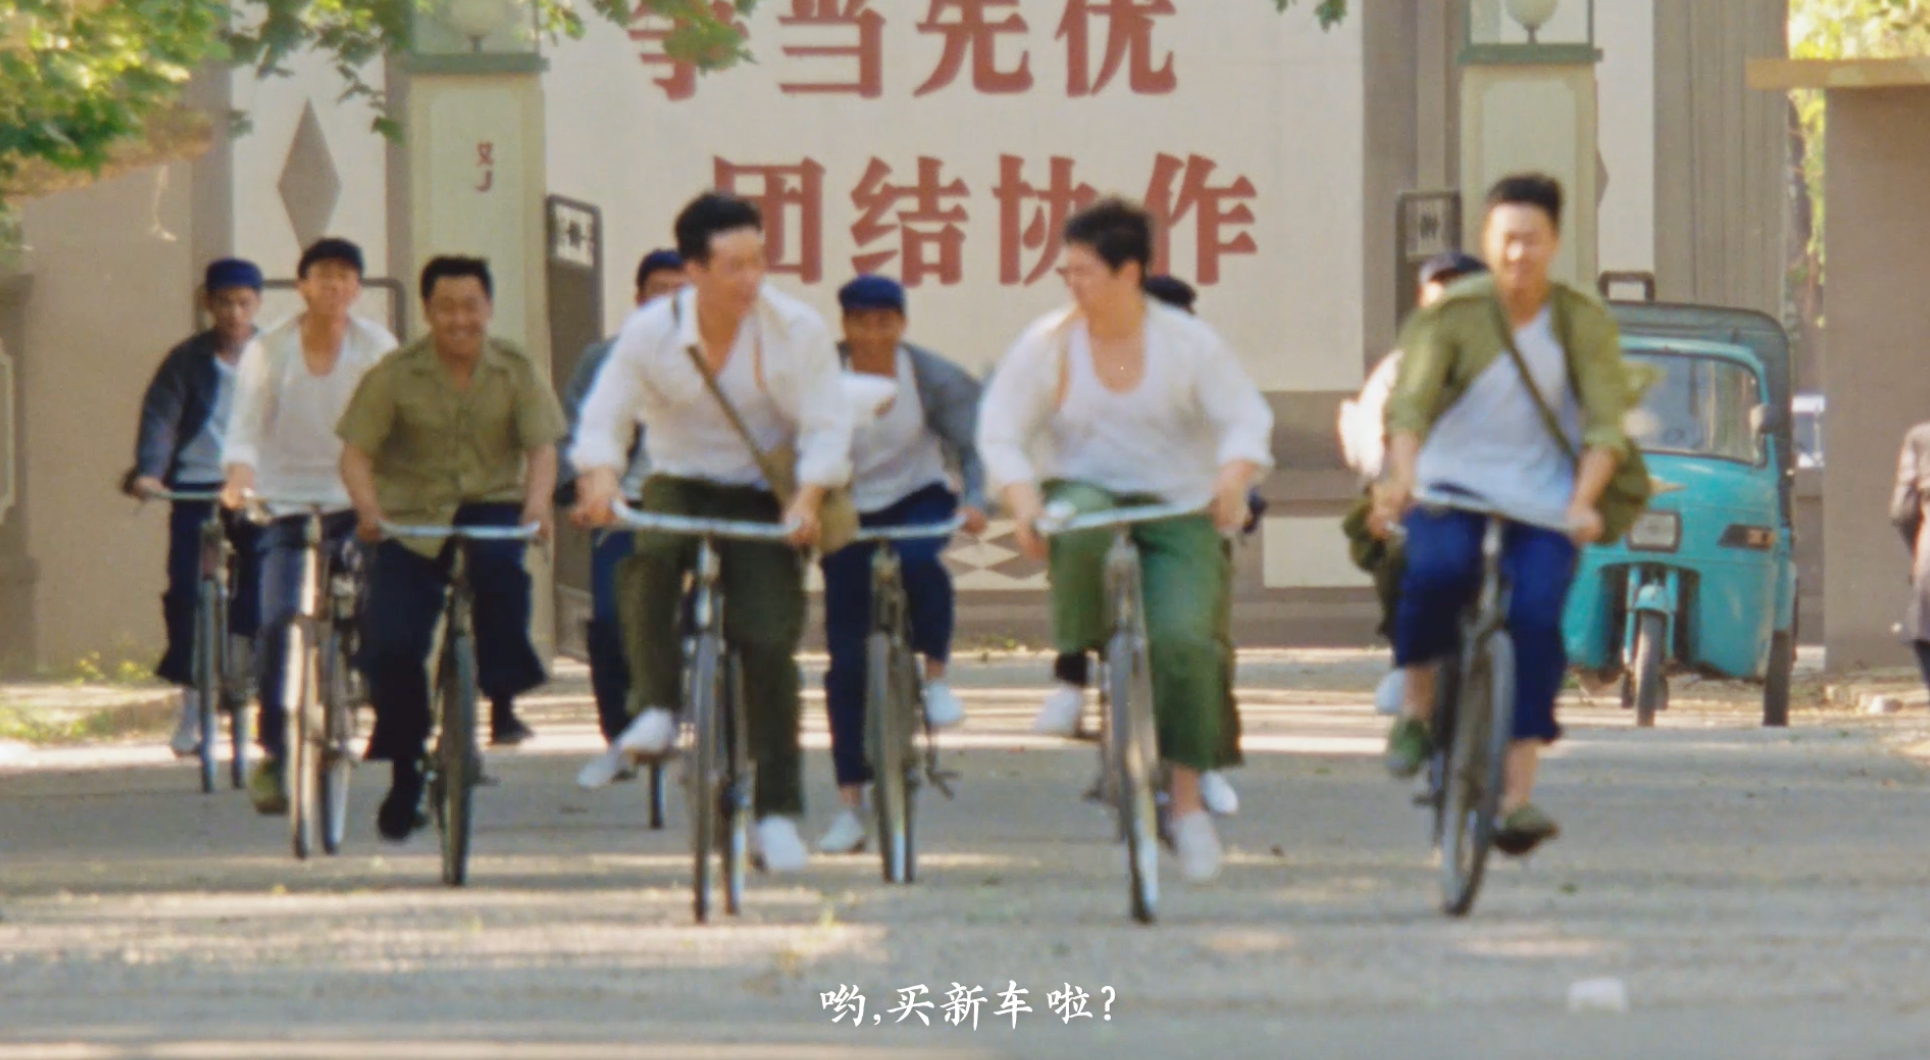 天猫《你好新生活》刷屏背后,是中国国民生活的快速发展